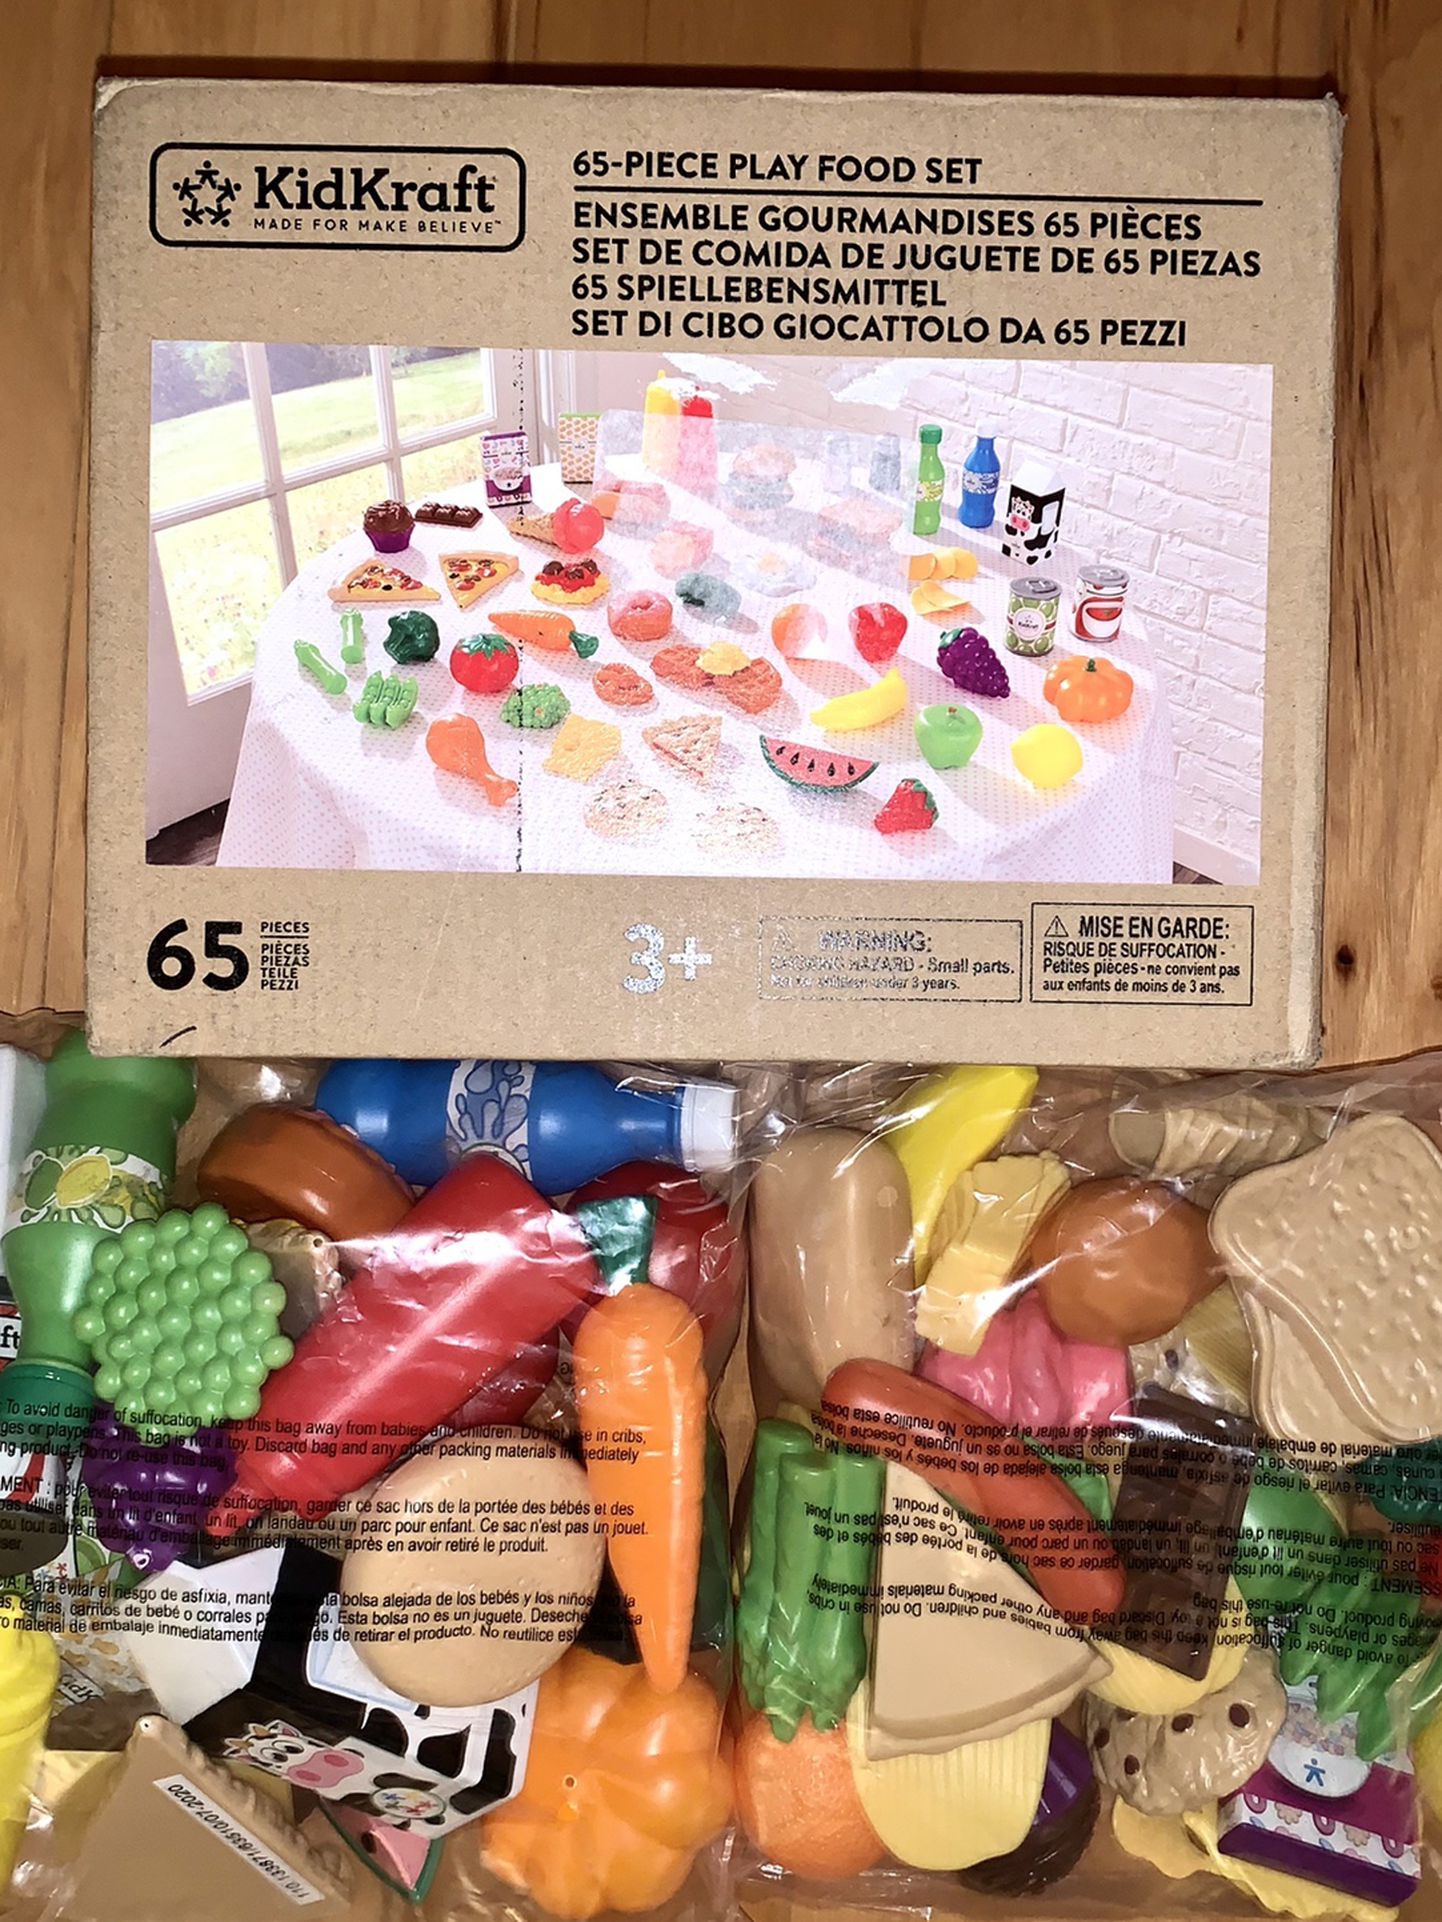 KidKraft 65-Piece Play Food Set - New In Packaging